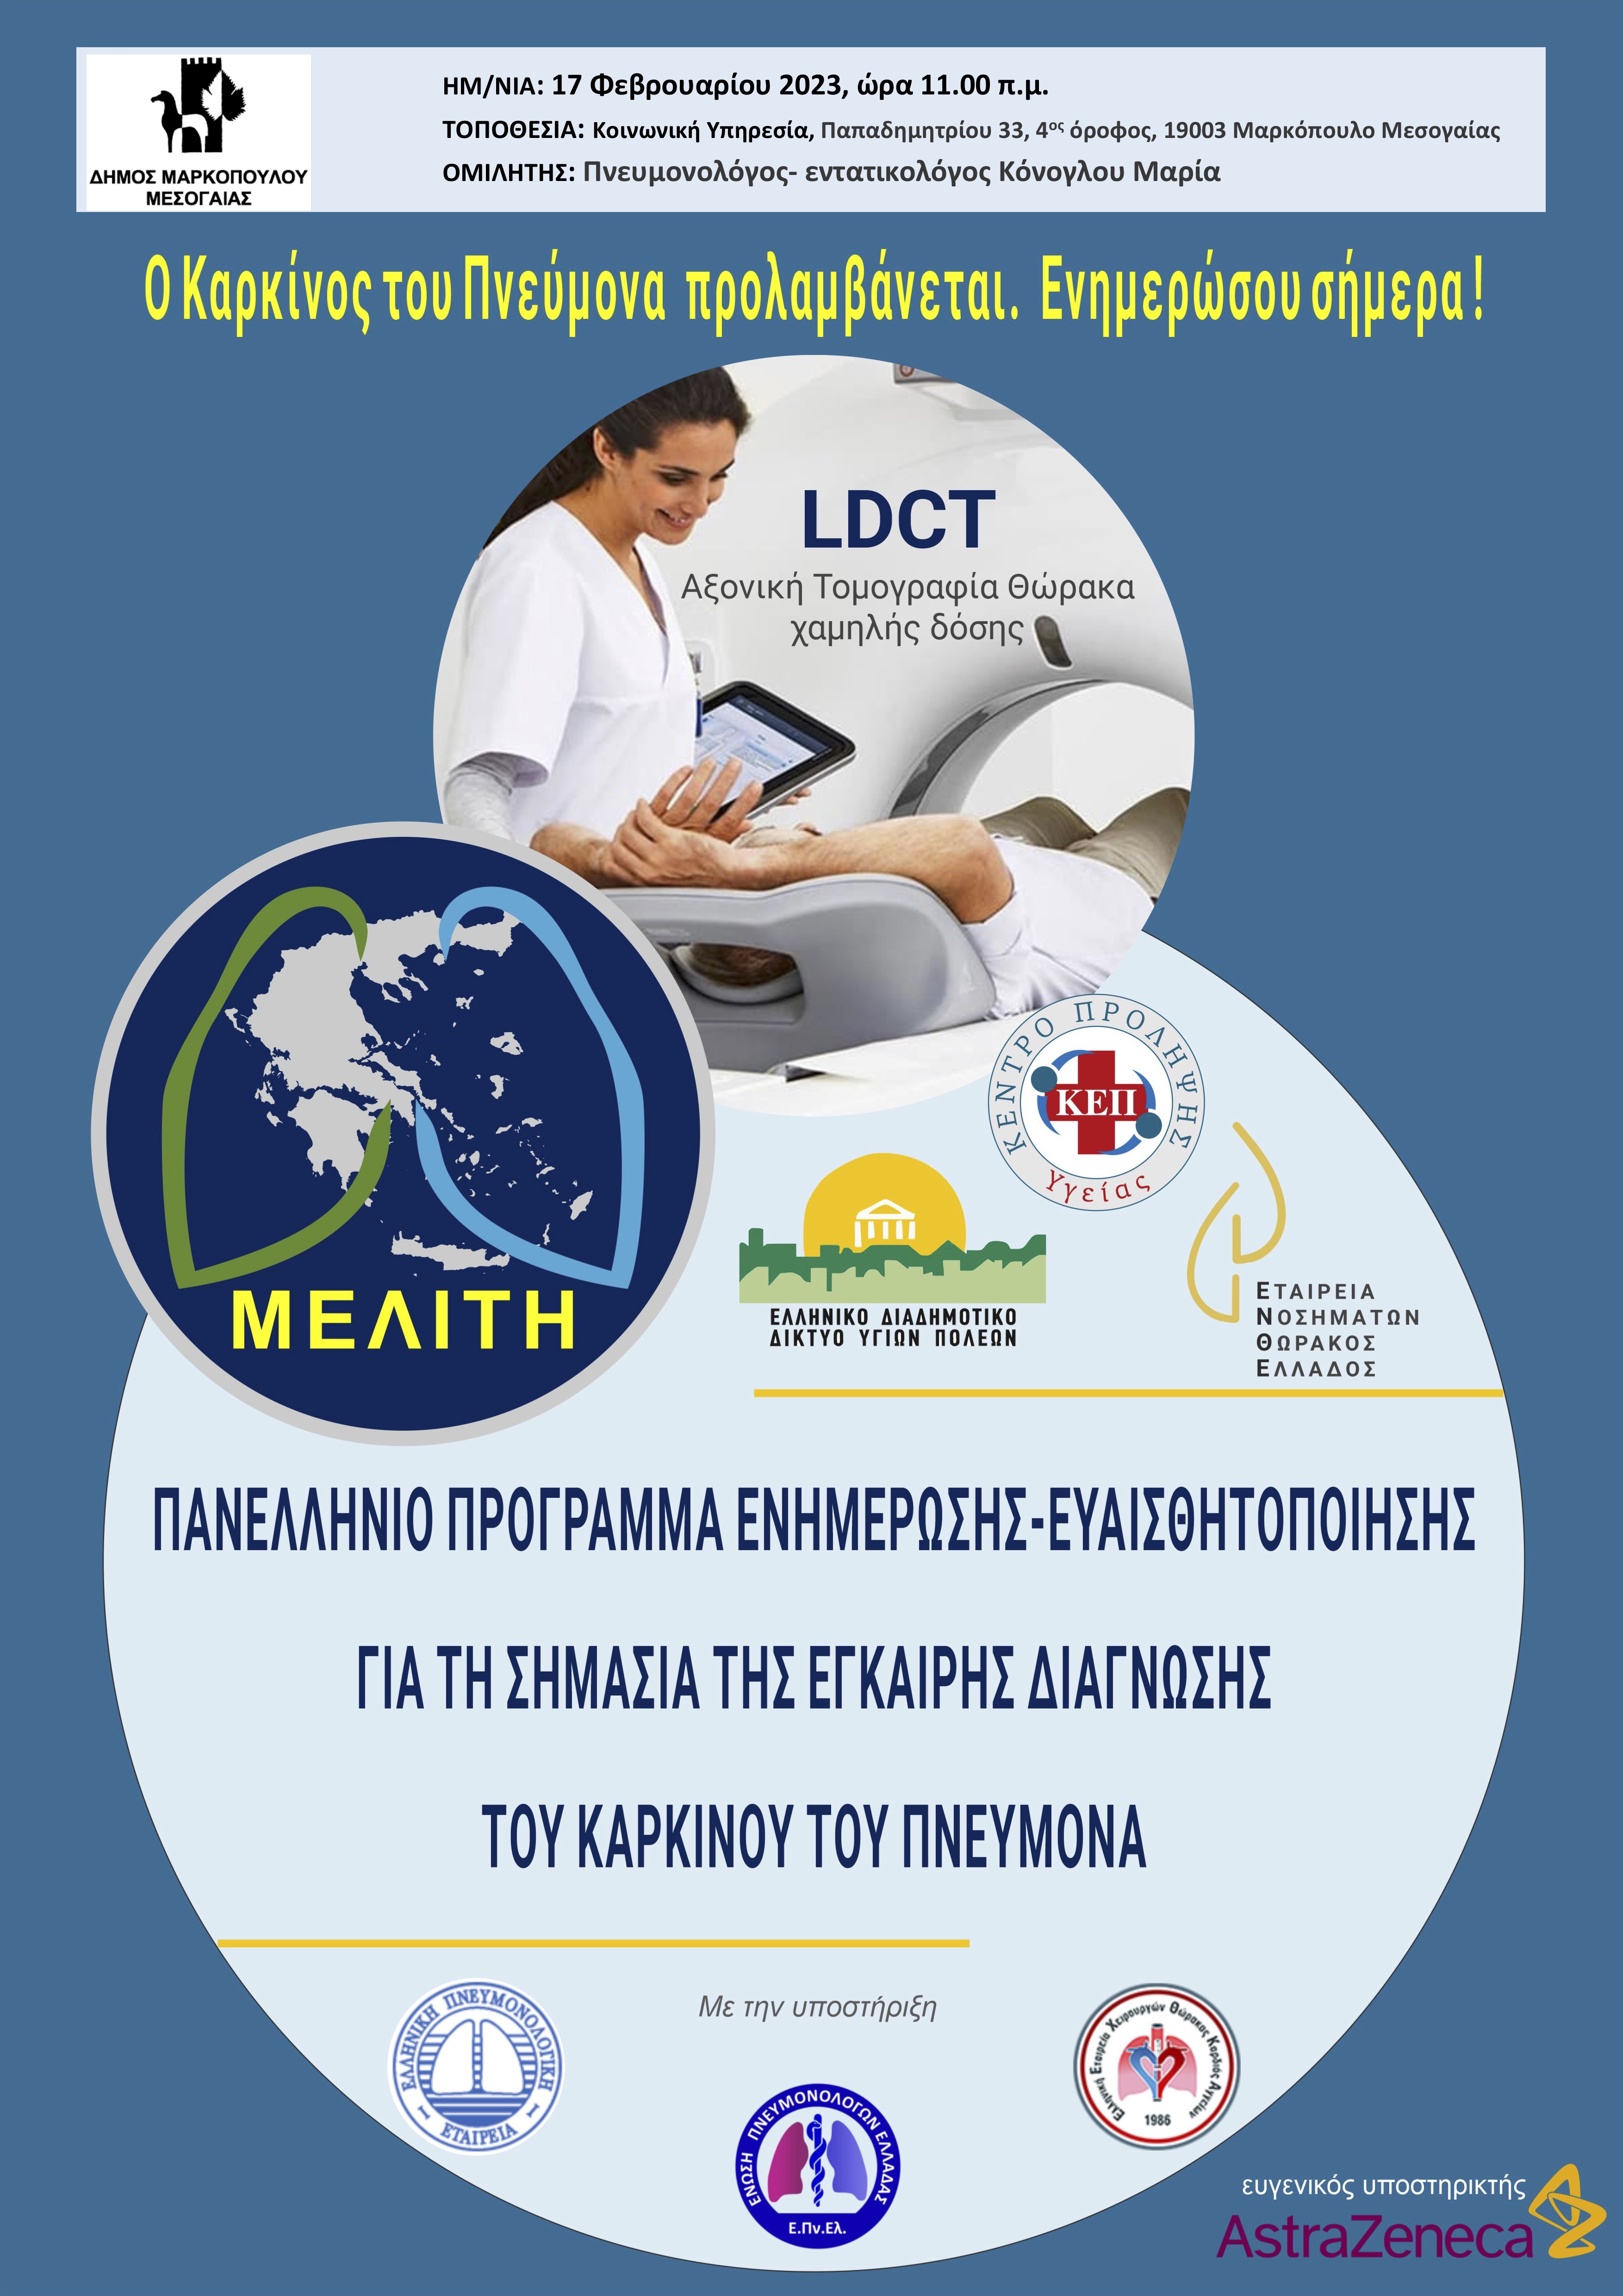 Ενημερωτική ομιλία για την πρόληψη του καρκίνου του πνεύμονα στον Δήμο Μαρκοπούλου Μεσογαίας